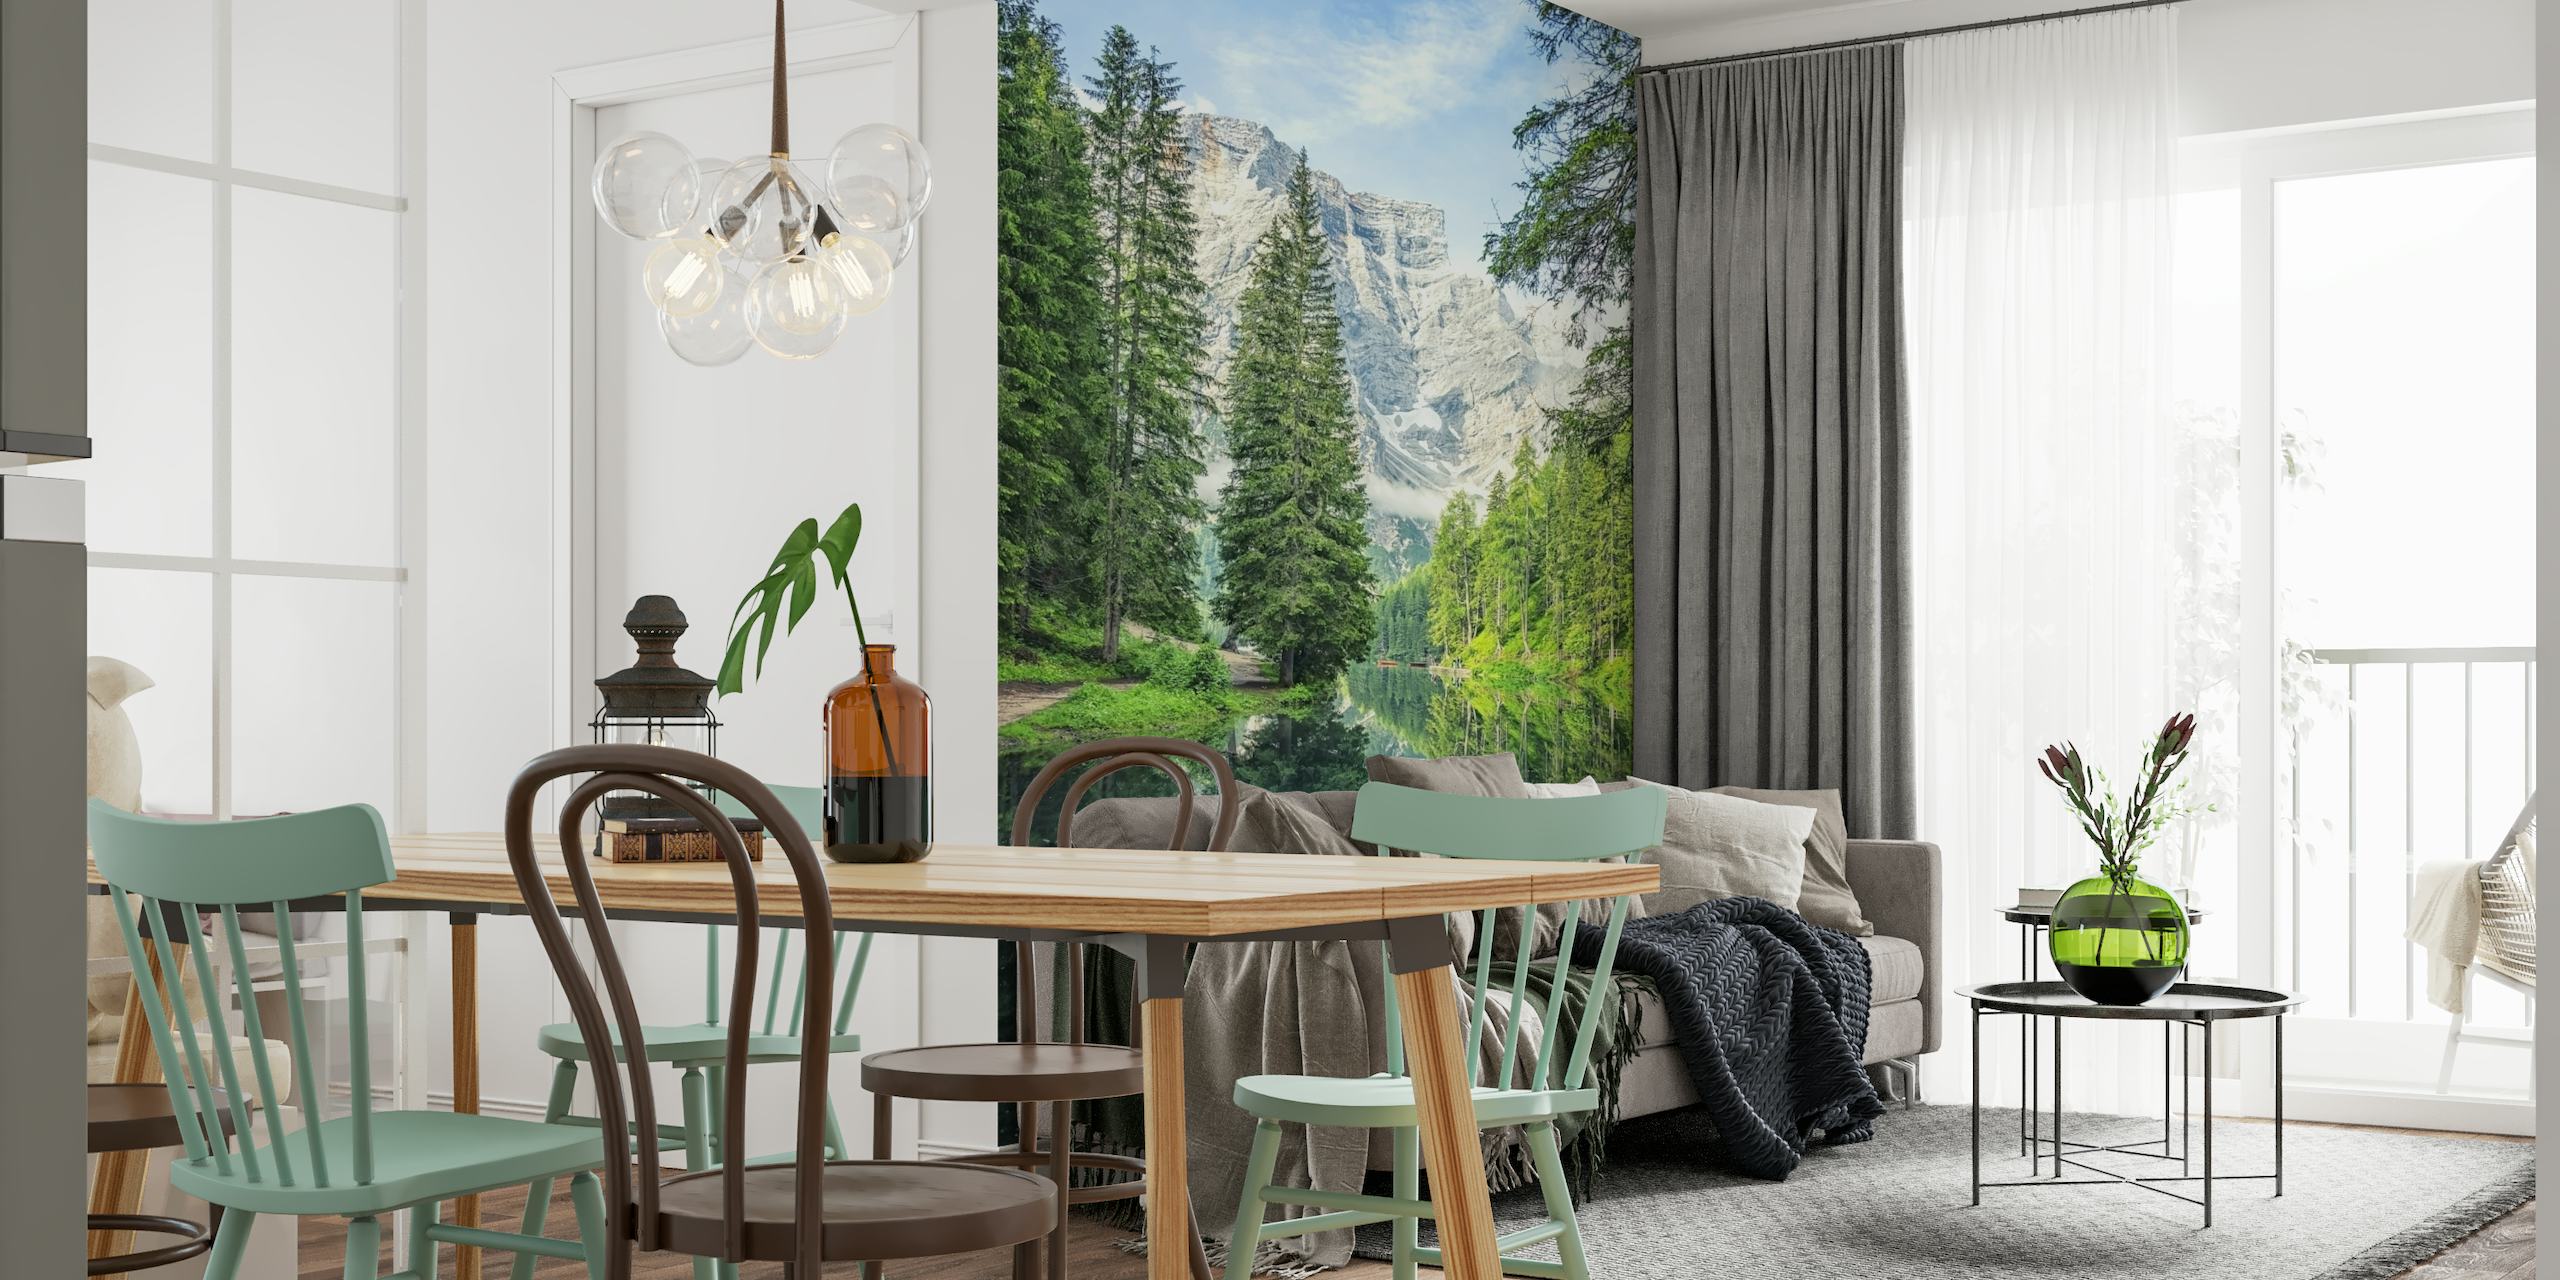 Mural de parede Pragser Wildsee mostrando o lago alpino e as montanhas Dolomitas